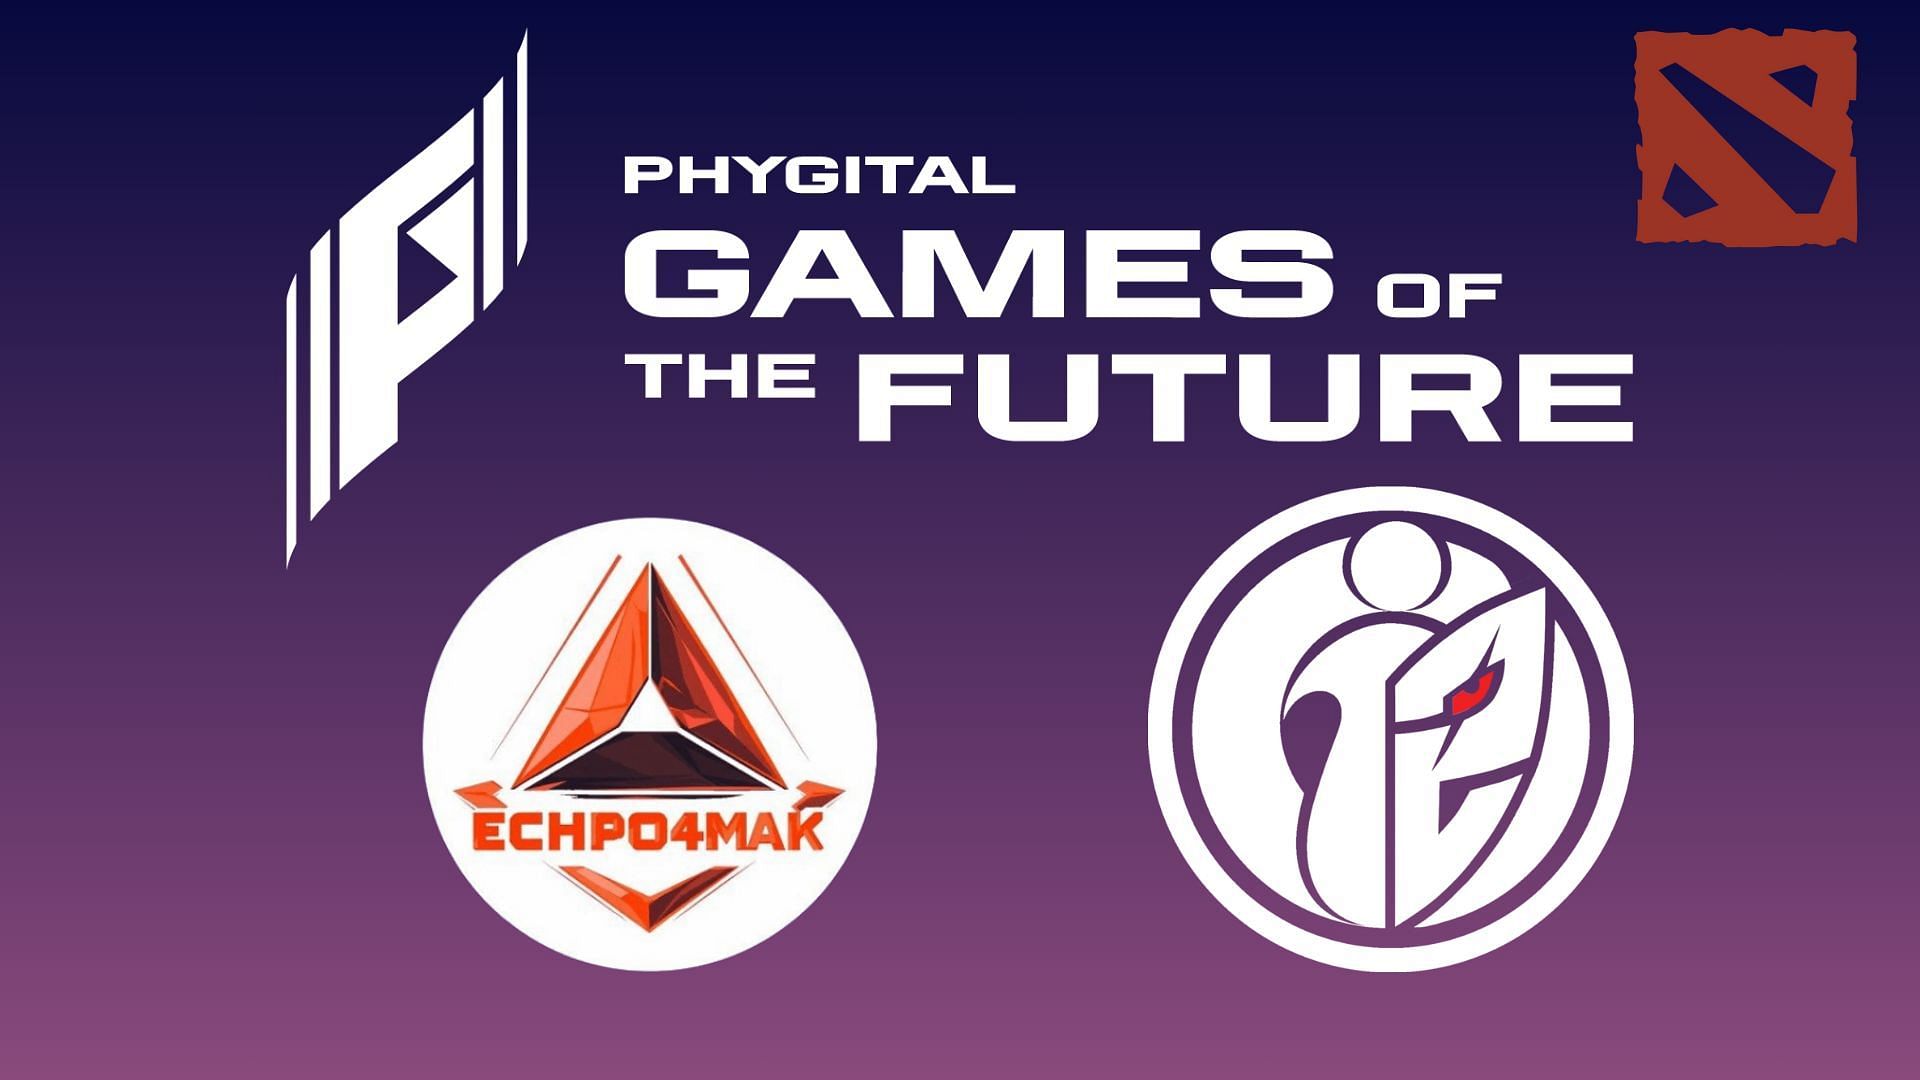 Echpo4mak vs G2.iG in Games of the Future 2024 